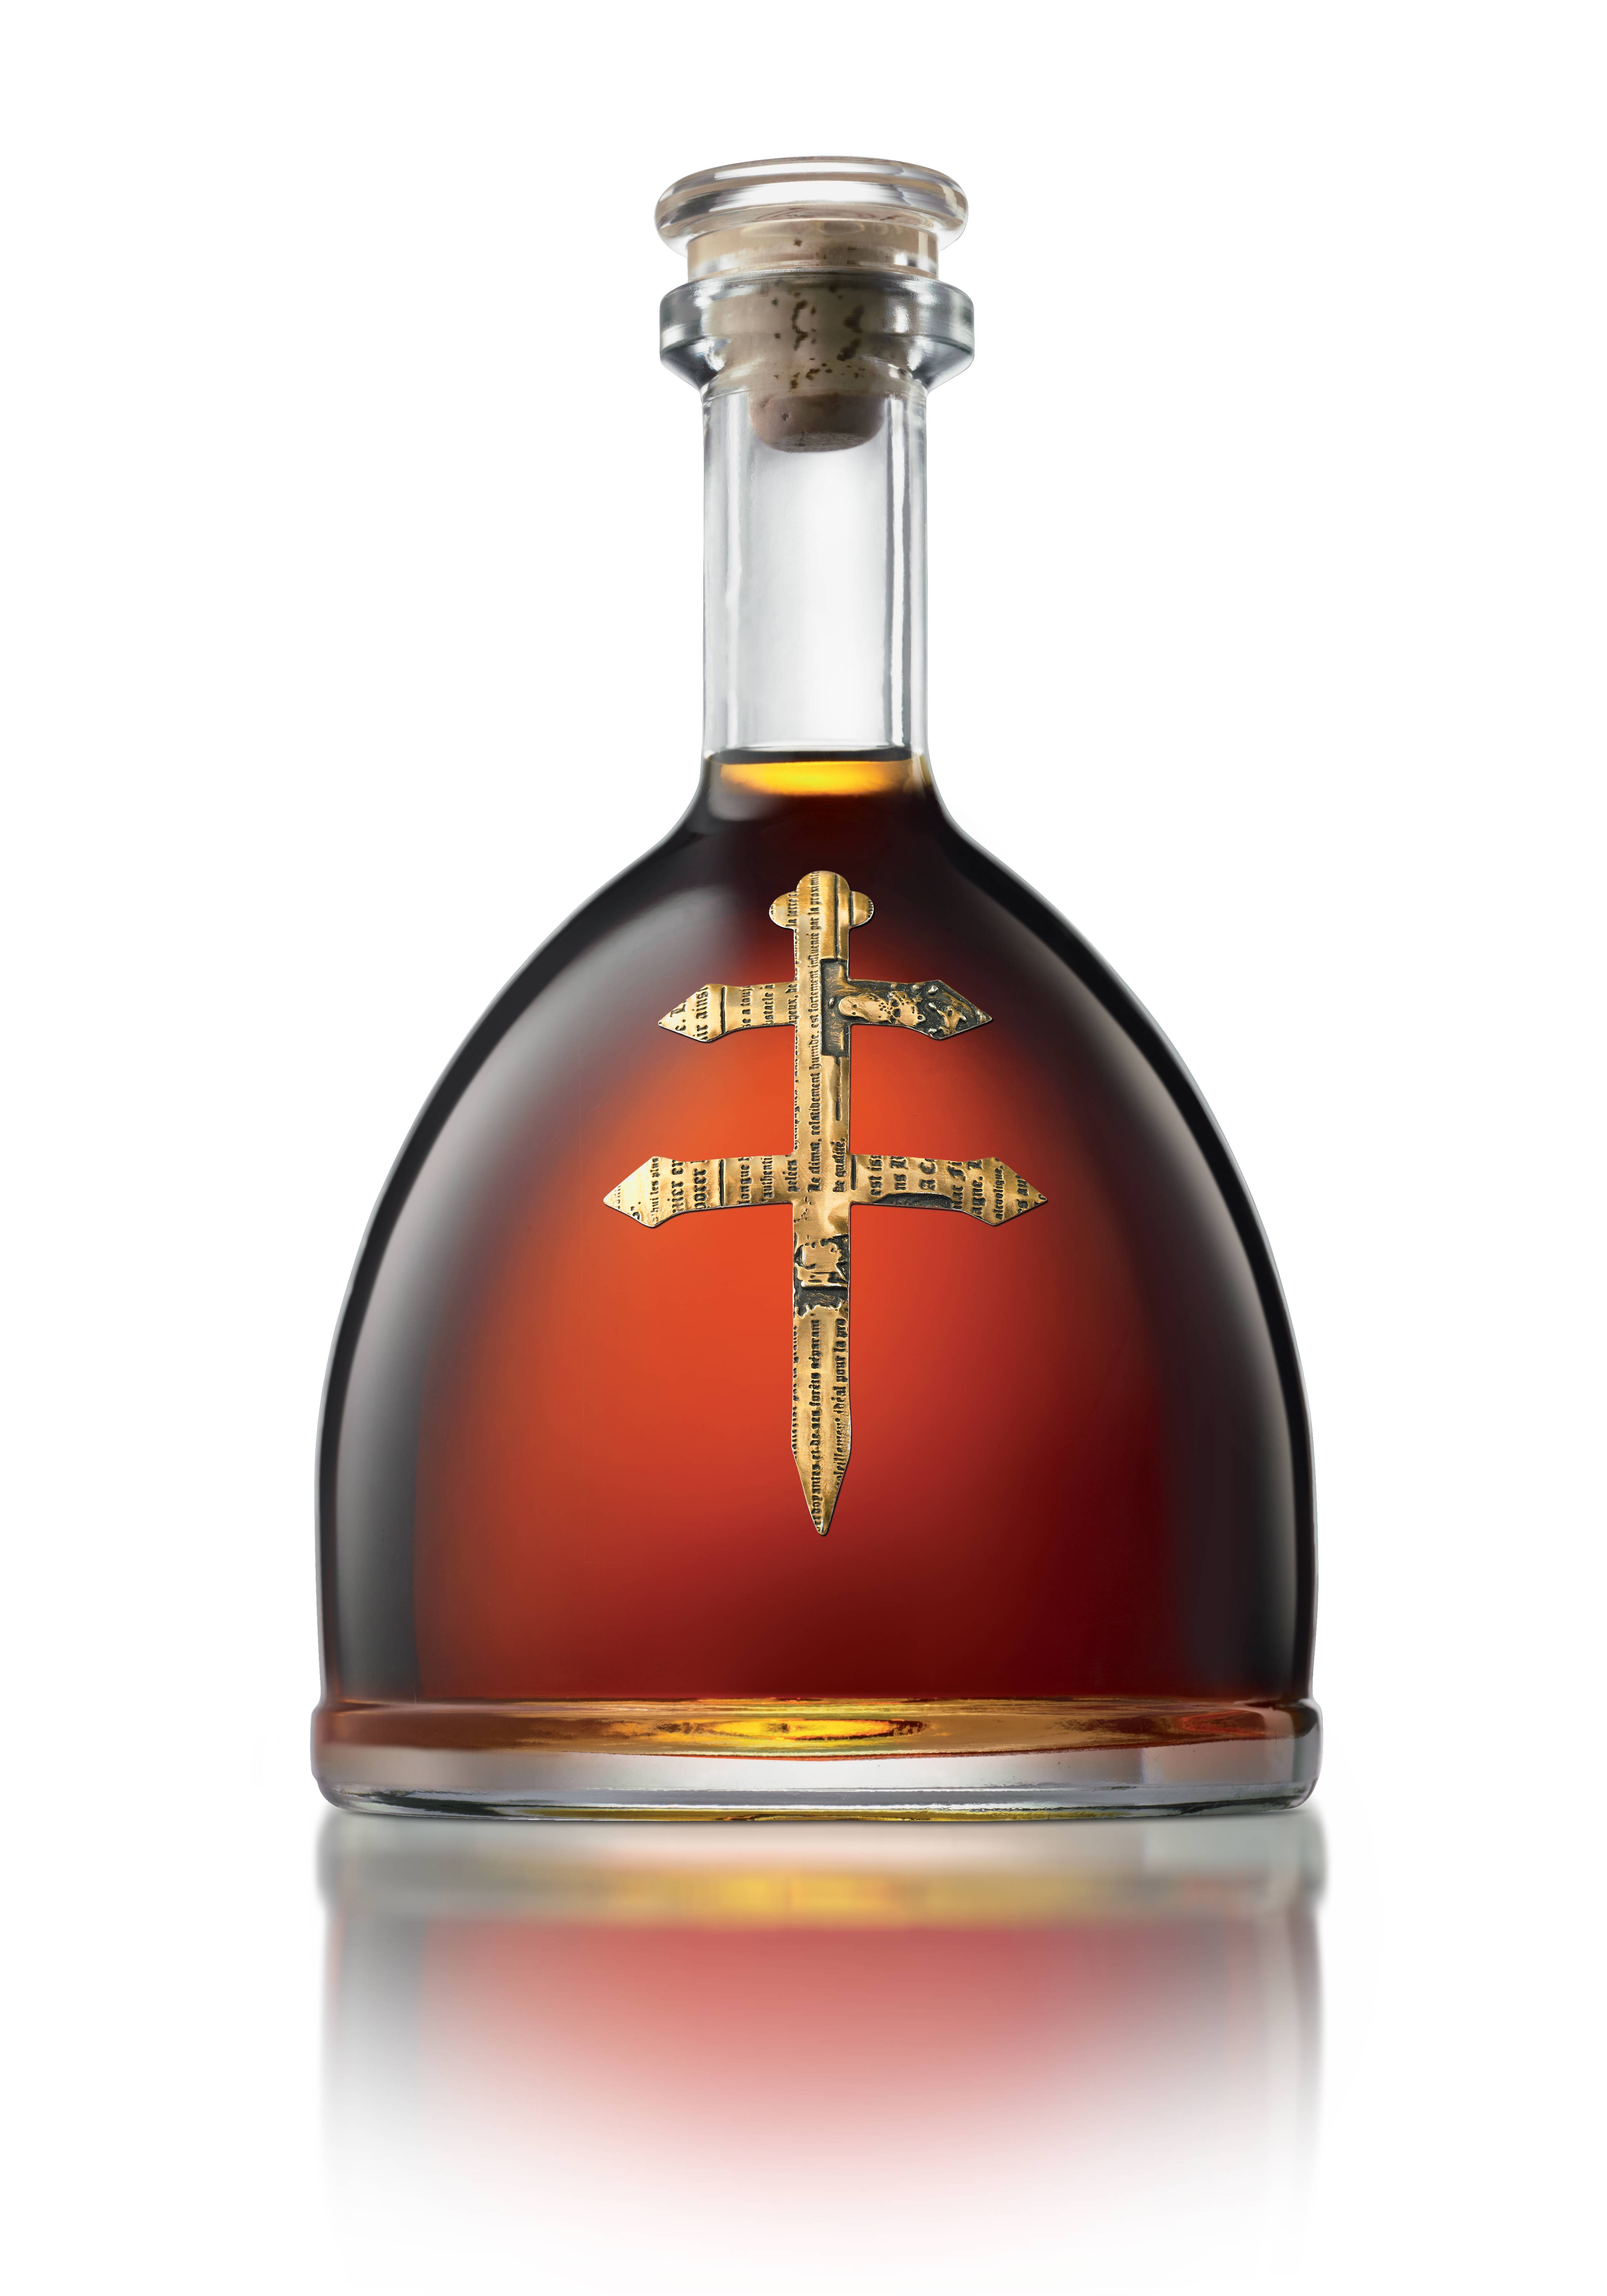 D'usse Cognac VSOP Review Drink of the Week